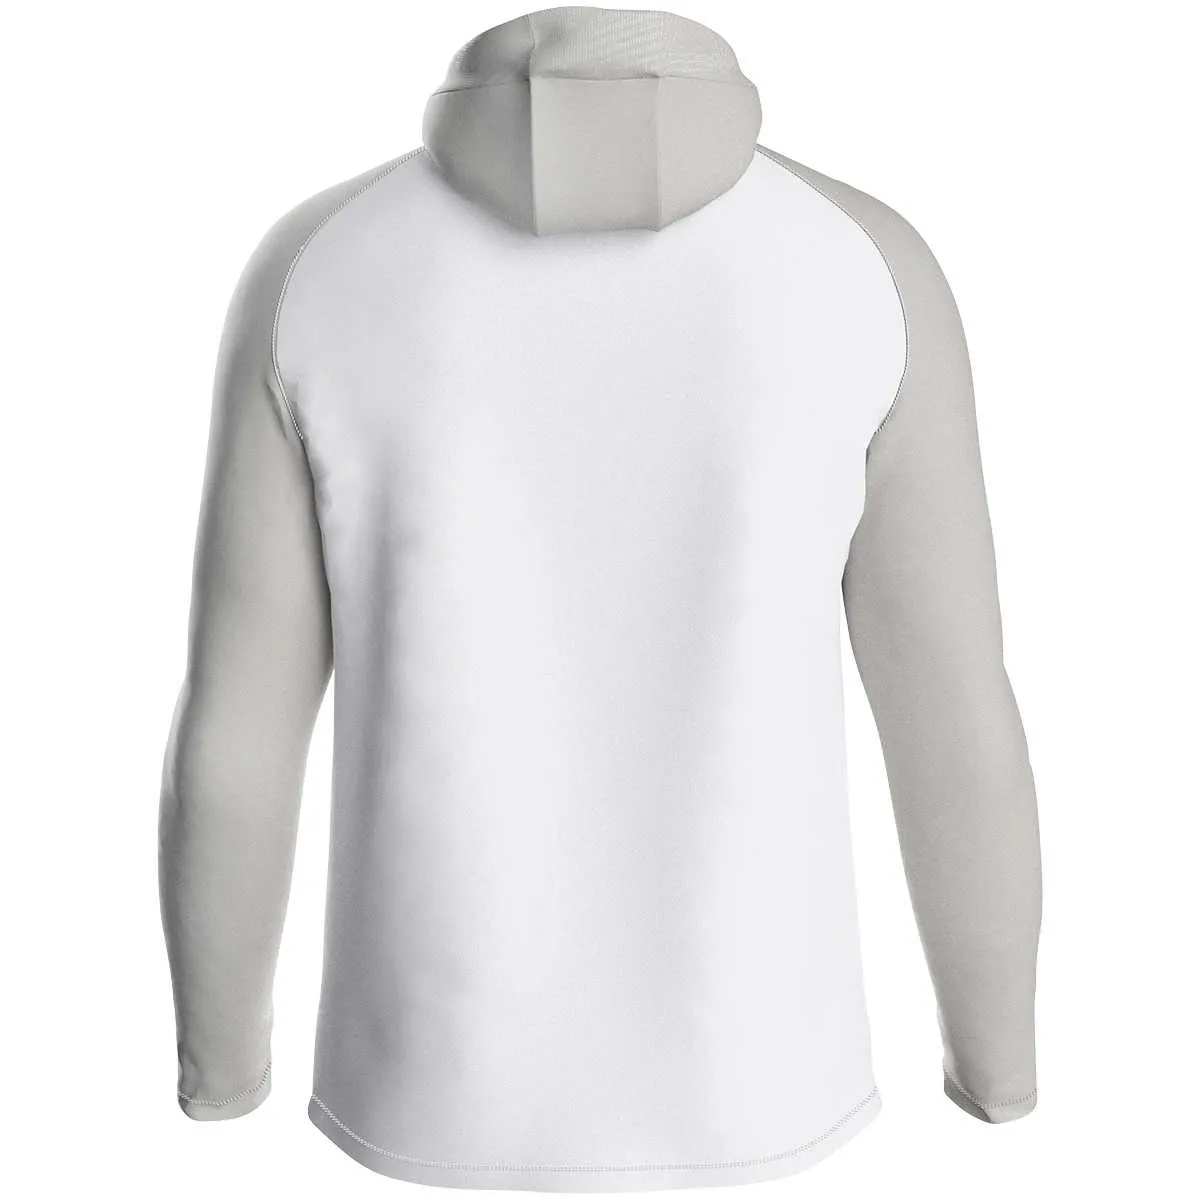 JAKO hooded jacket Iconic white/soft grey/light grey